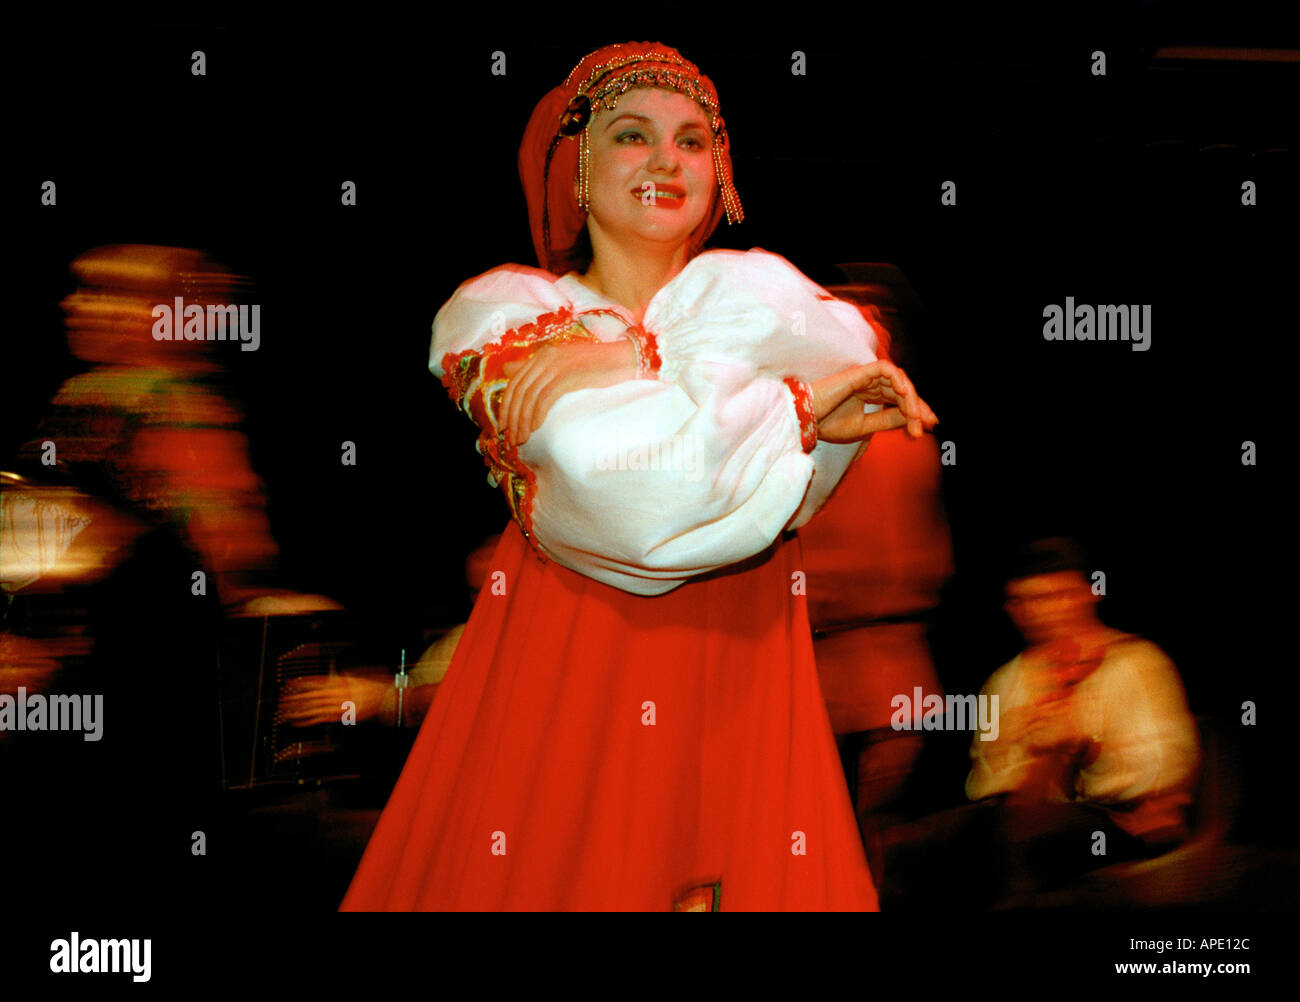 Danse traditionnelle russe, Saint-Pétersbourg, Russie Banque D'Images